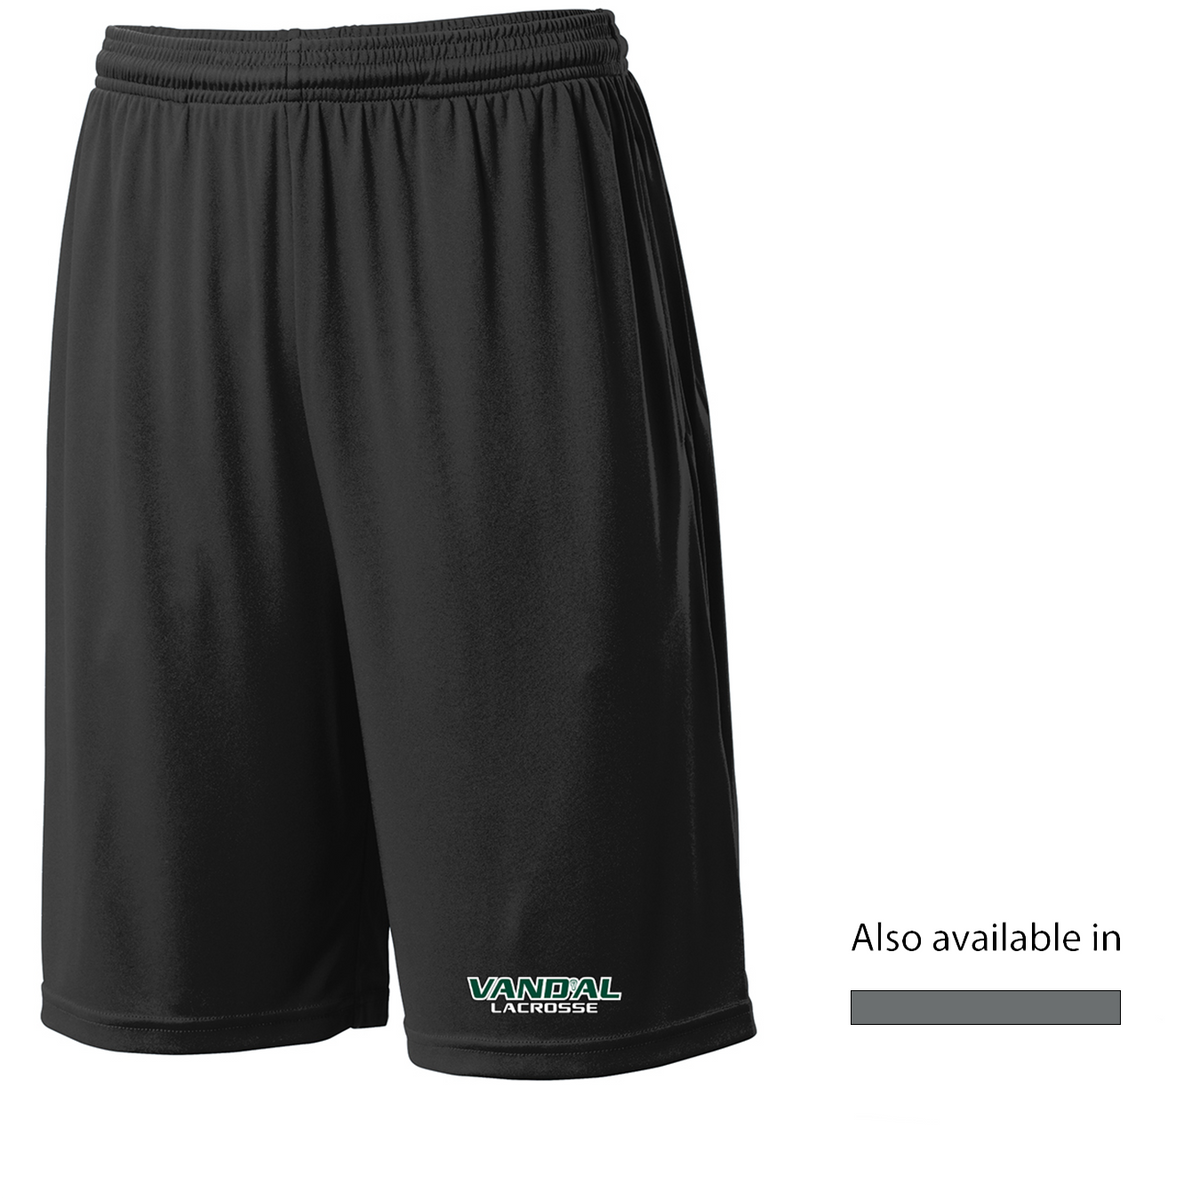 Vand'al Lacrosse Shorts